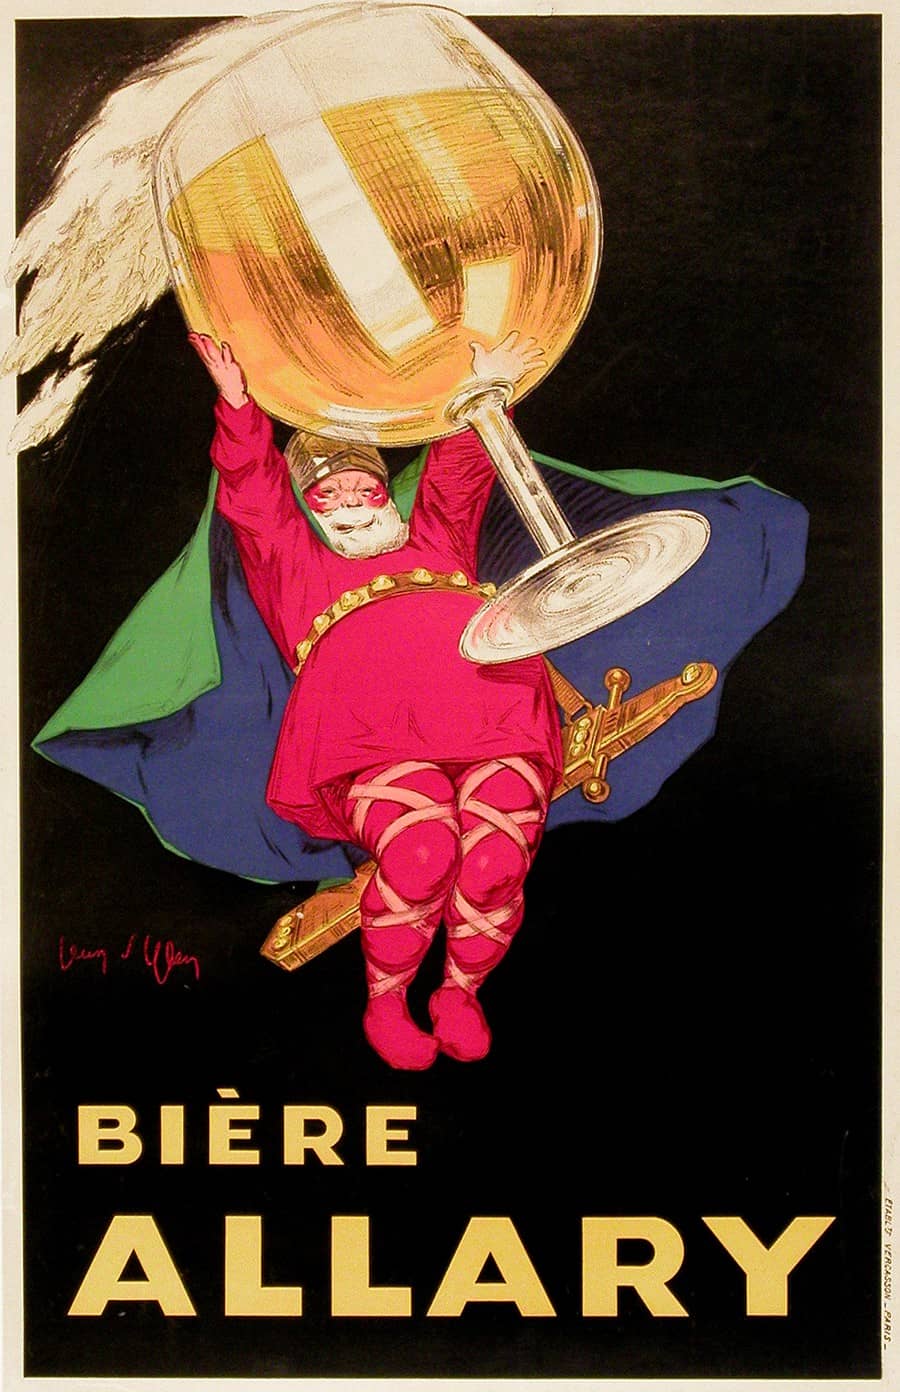 Original Vintage Biere Allary Poster Carton by Jean d'Ylen c1925 Beer